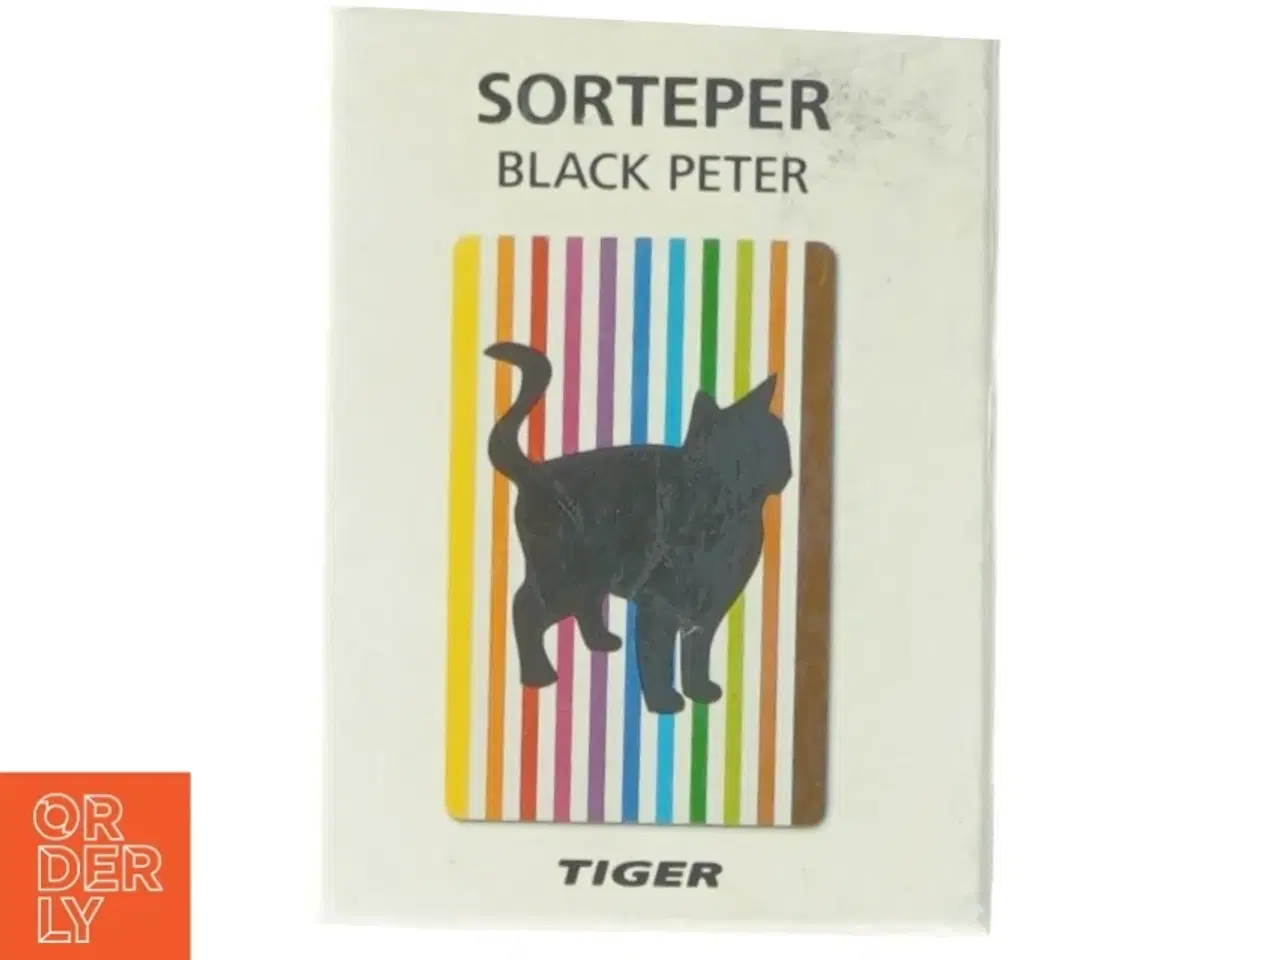 Billede 1 - Sorteper black peter fra Tiger (str. 13 x 10)